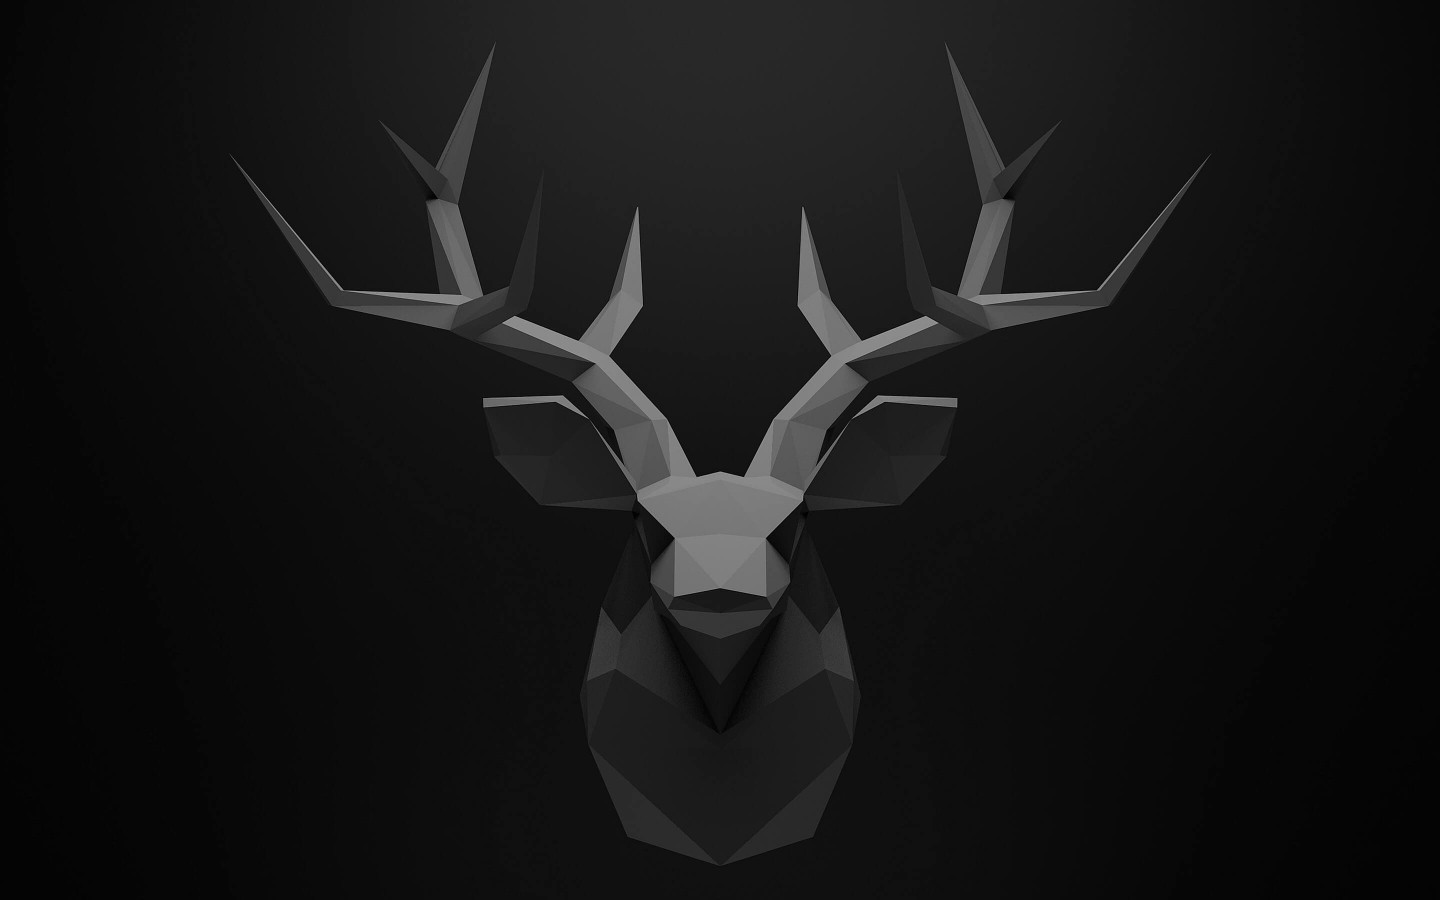 Low Poly Deer Head Wallpaper for Desktop 1440x900